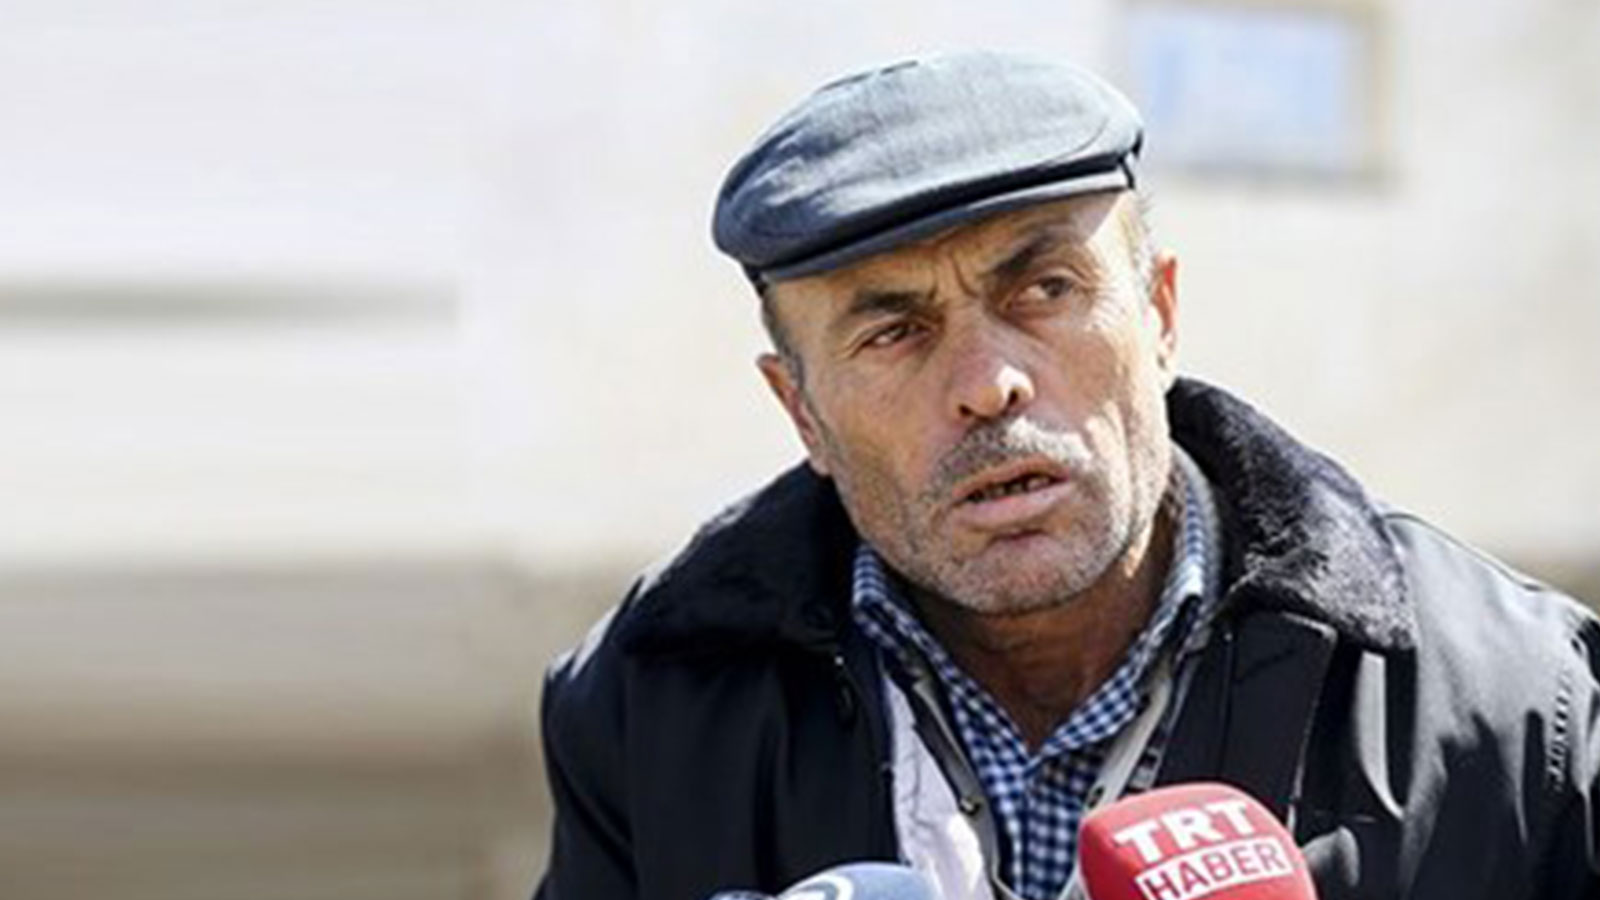 Şehidin babası Kılıçdaroğlu'na linç girişiminin ardından konuştu: Cenazeme herkes gelebilir